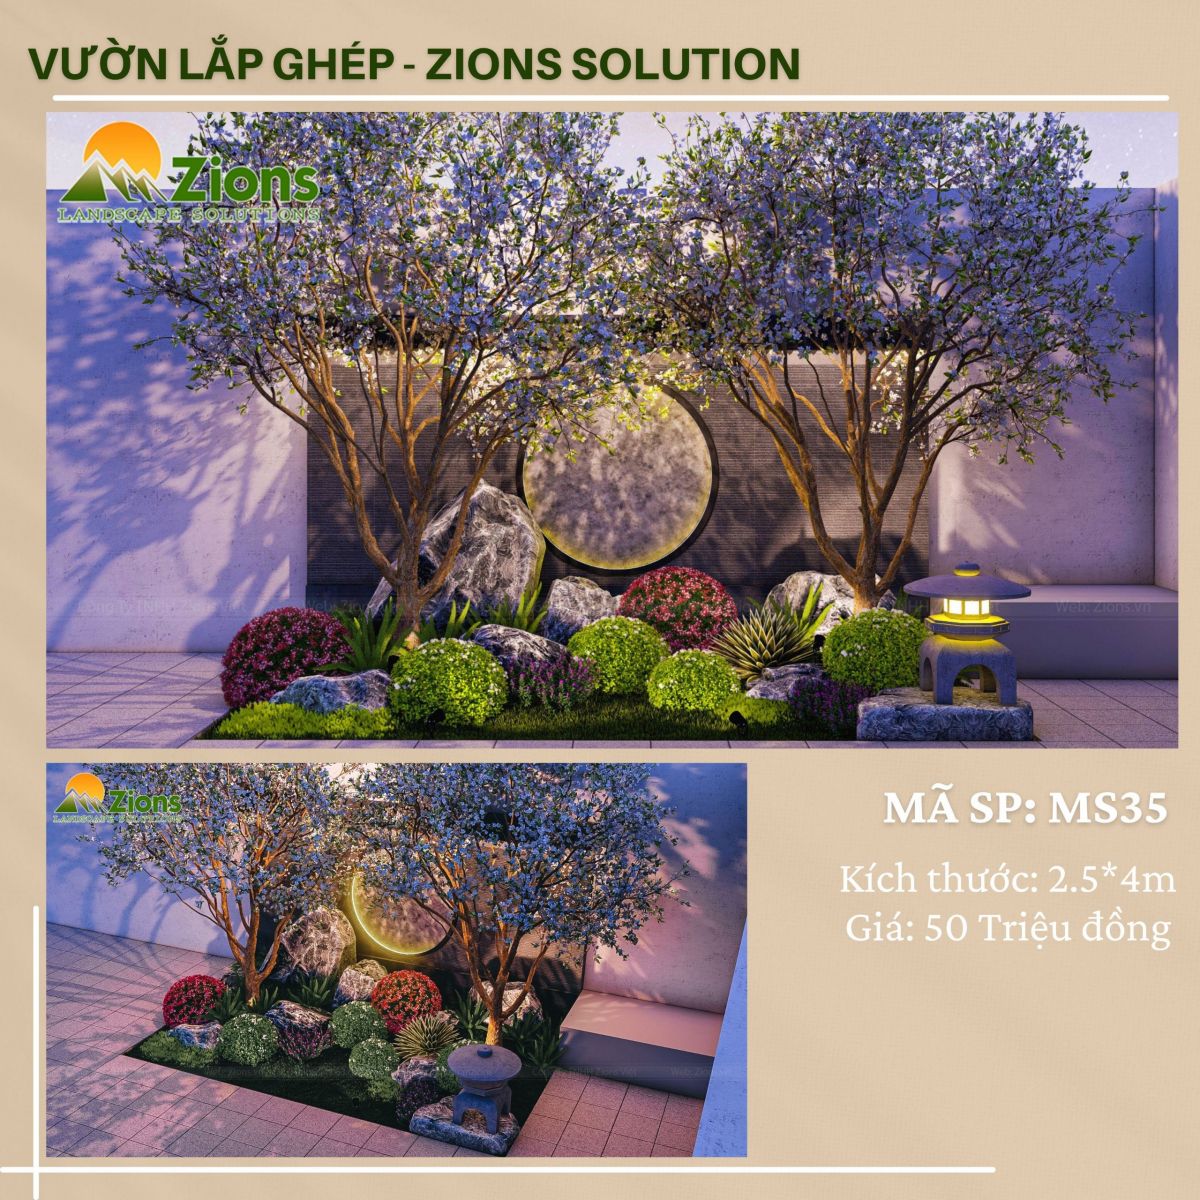 Mẫu vườn lắp ghép - thiết kế tiểu cảnh sân vườn zions